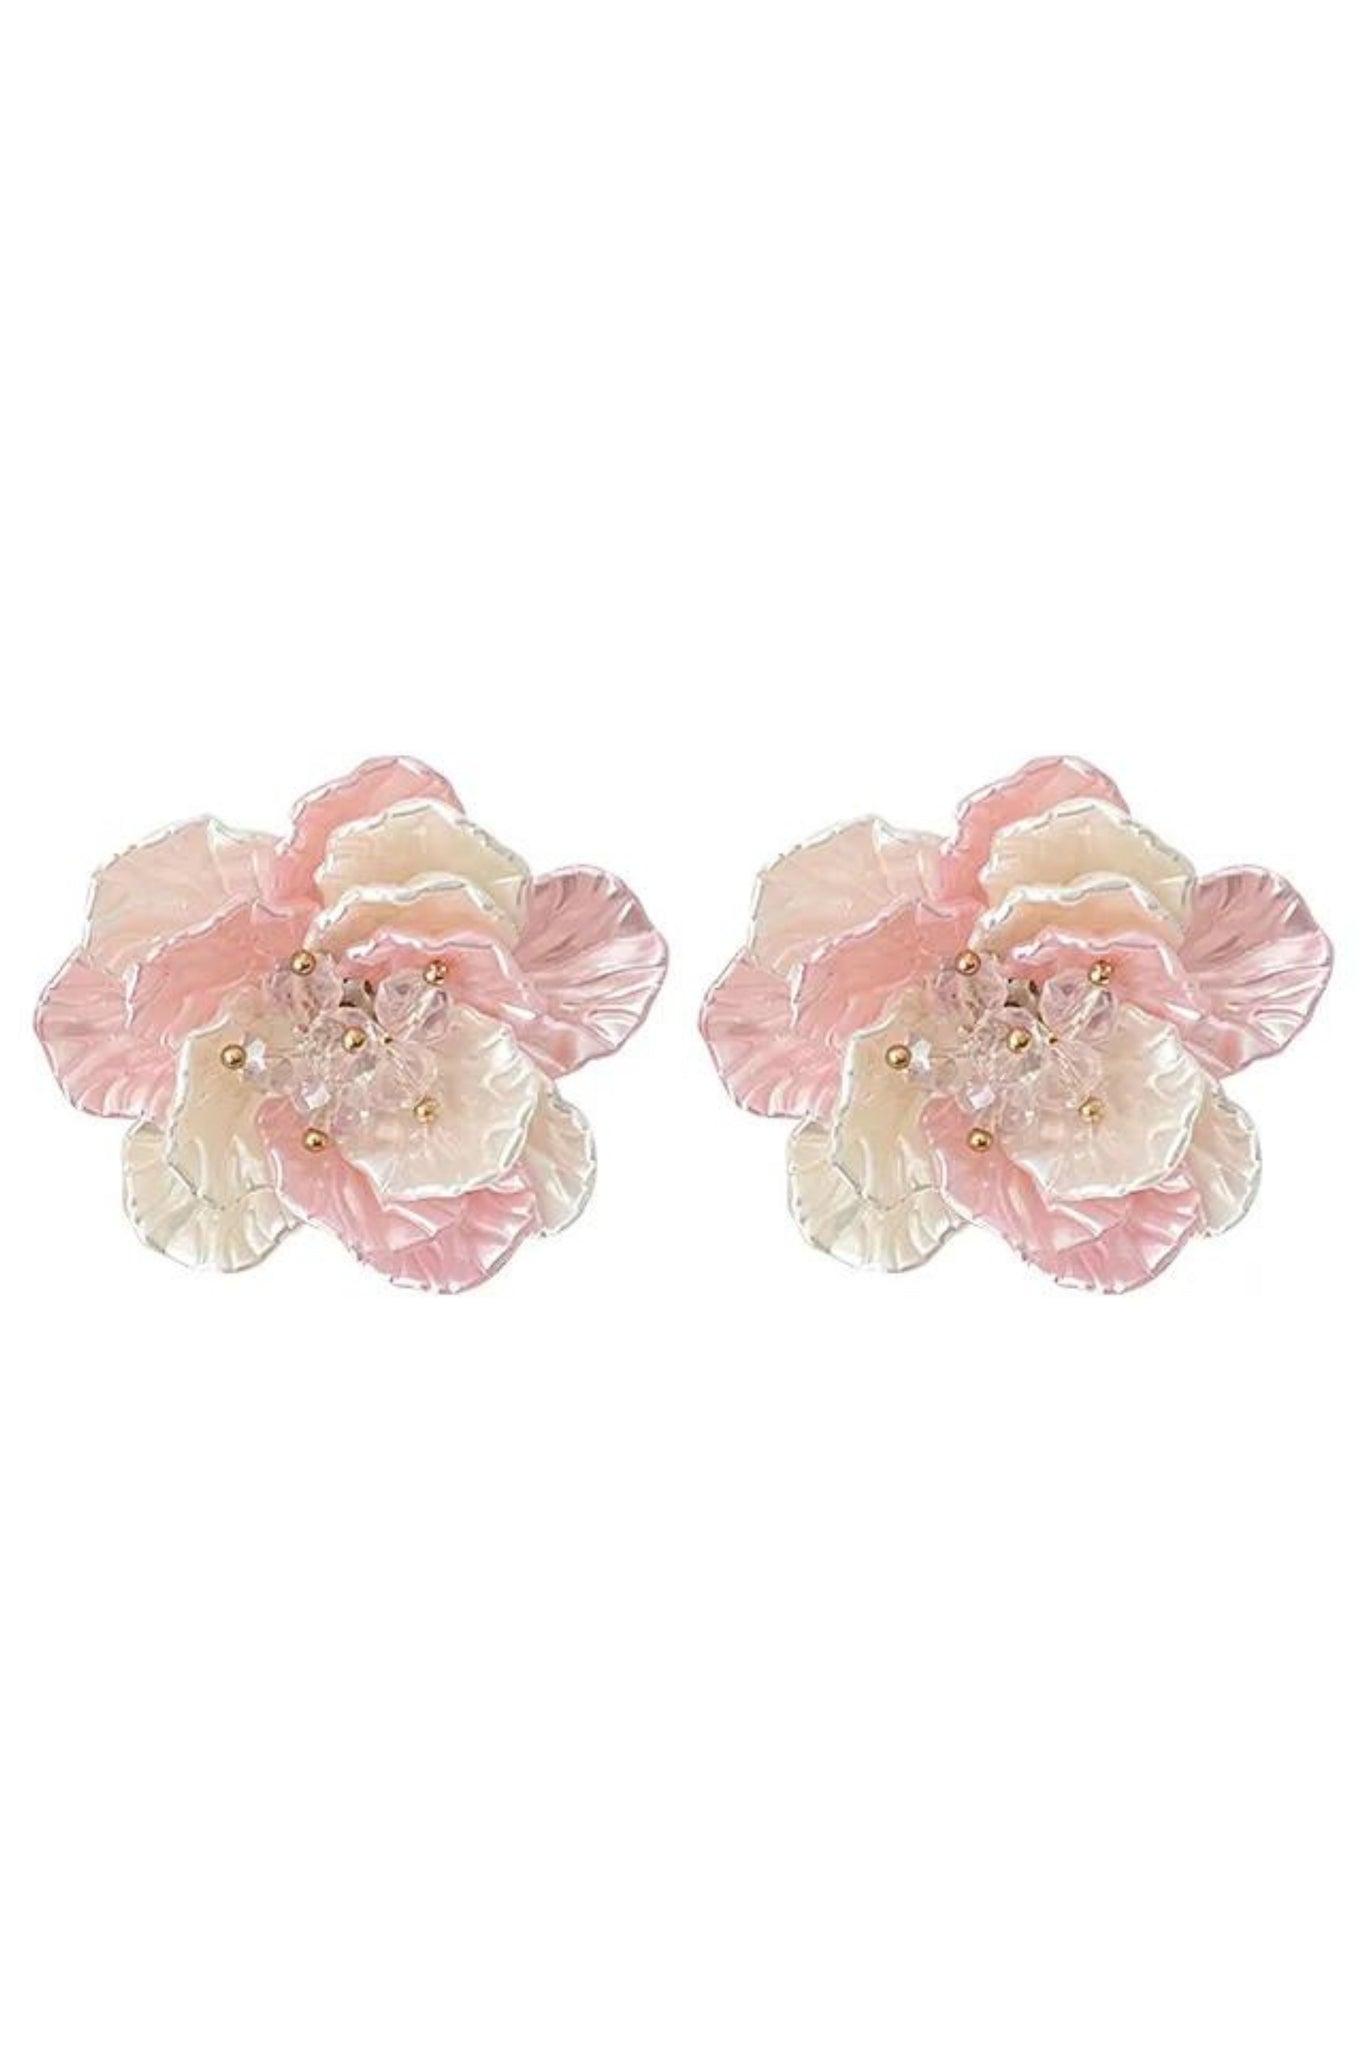 Sally Resin Flower Stud Earrings - Pink Cream